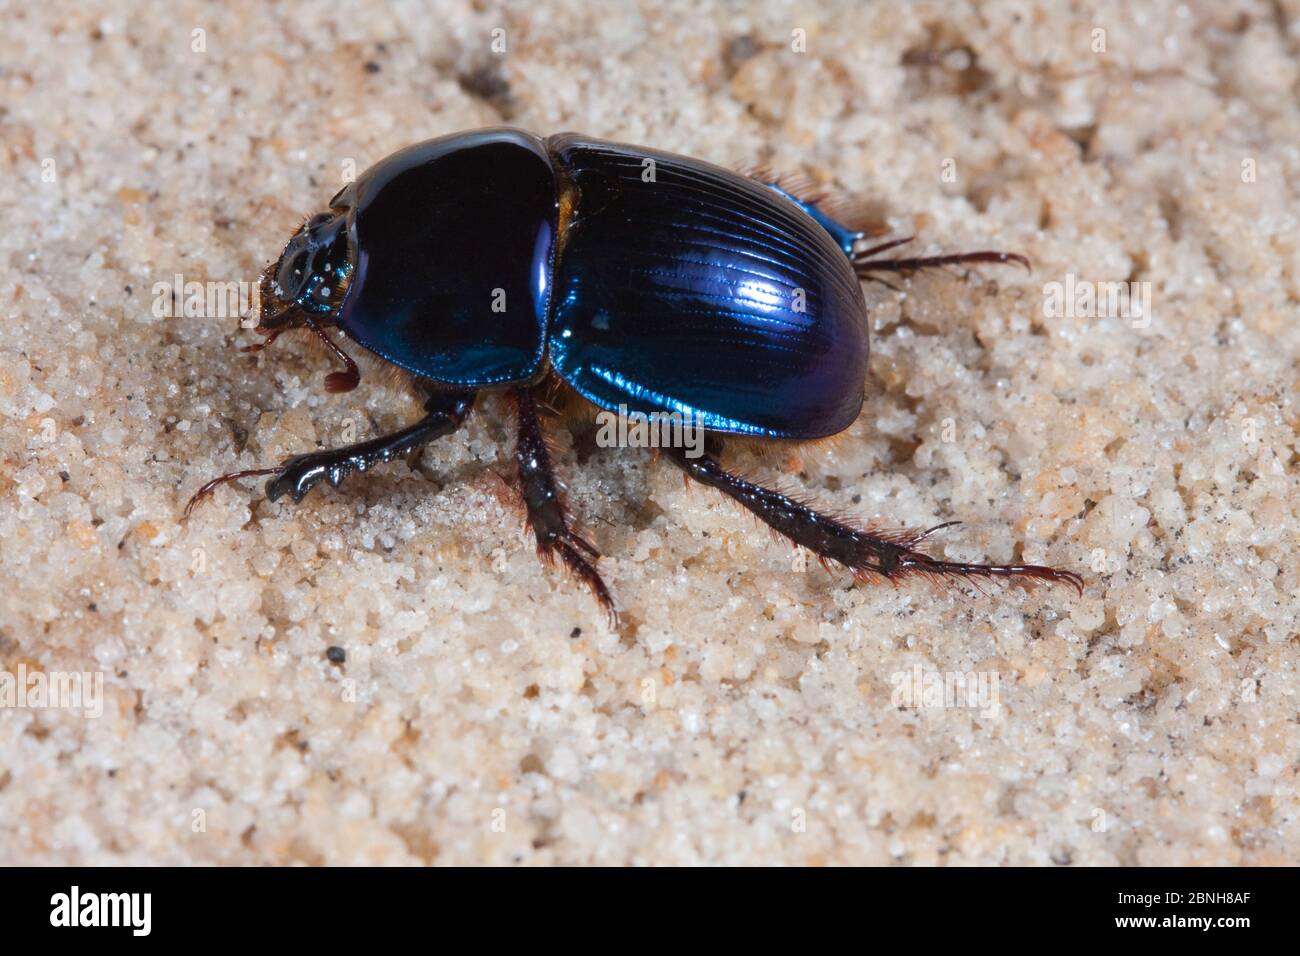 Le scarabée (Peltotrupes profundus) endémique de la Floride. Conditions contrôlées. Banque D'Images